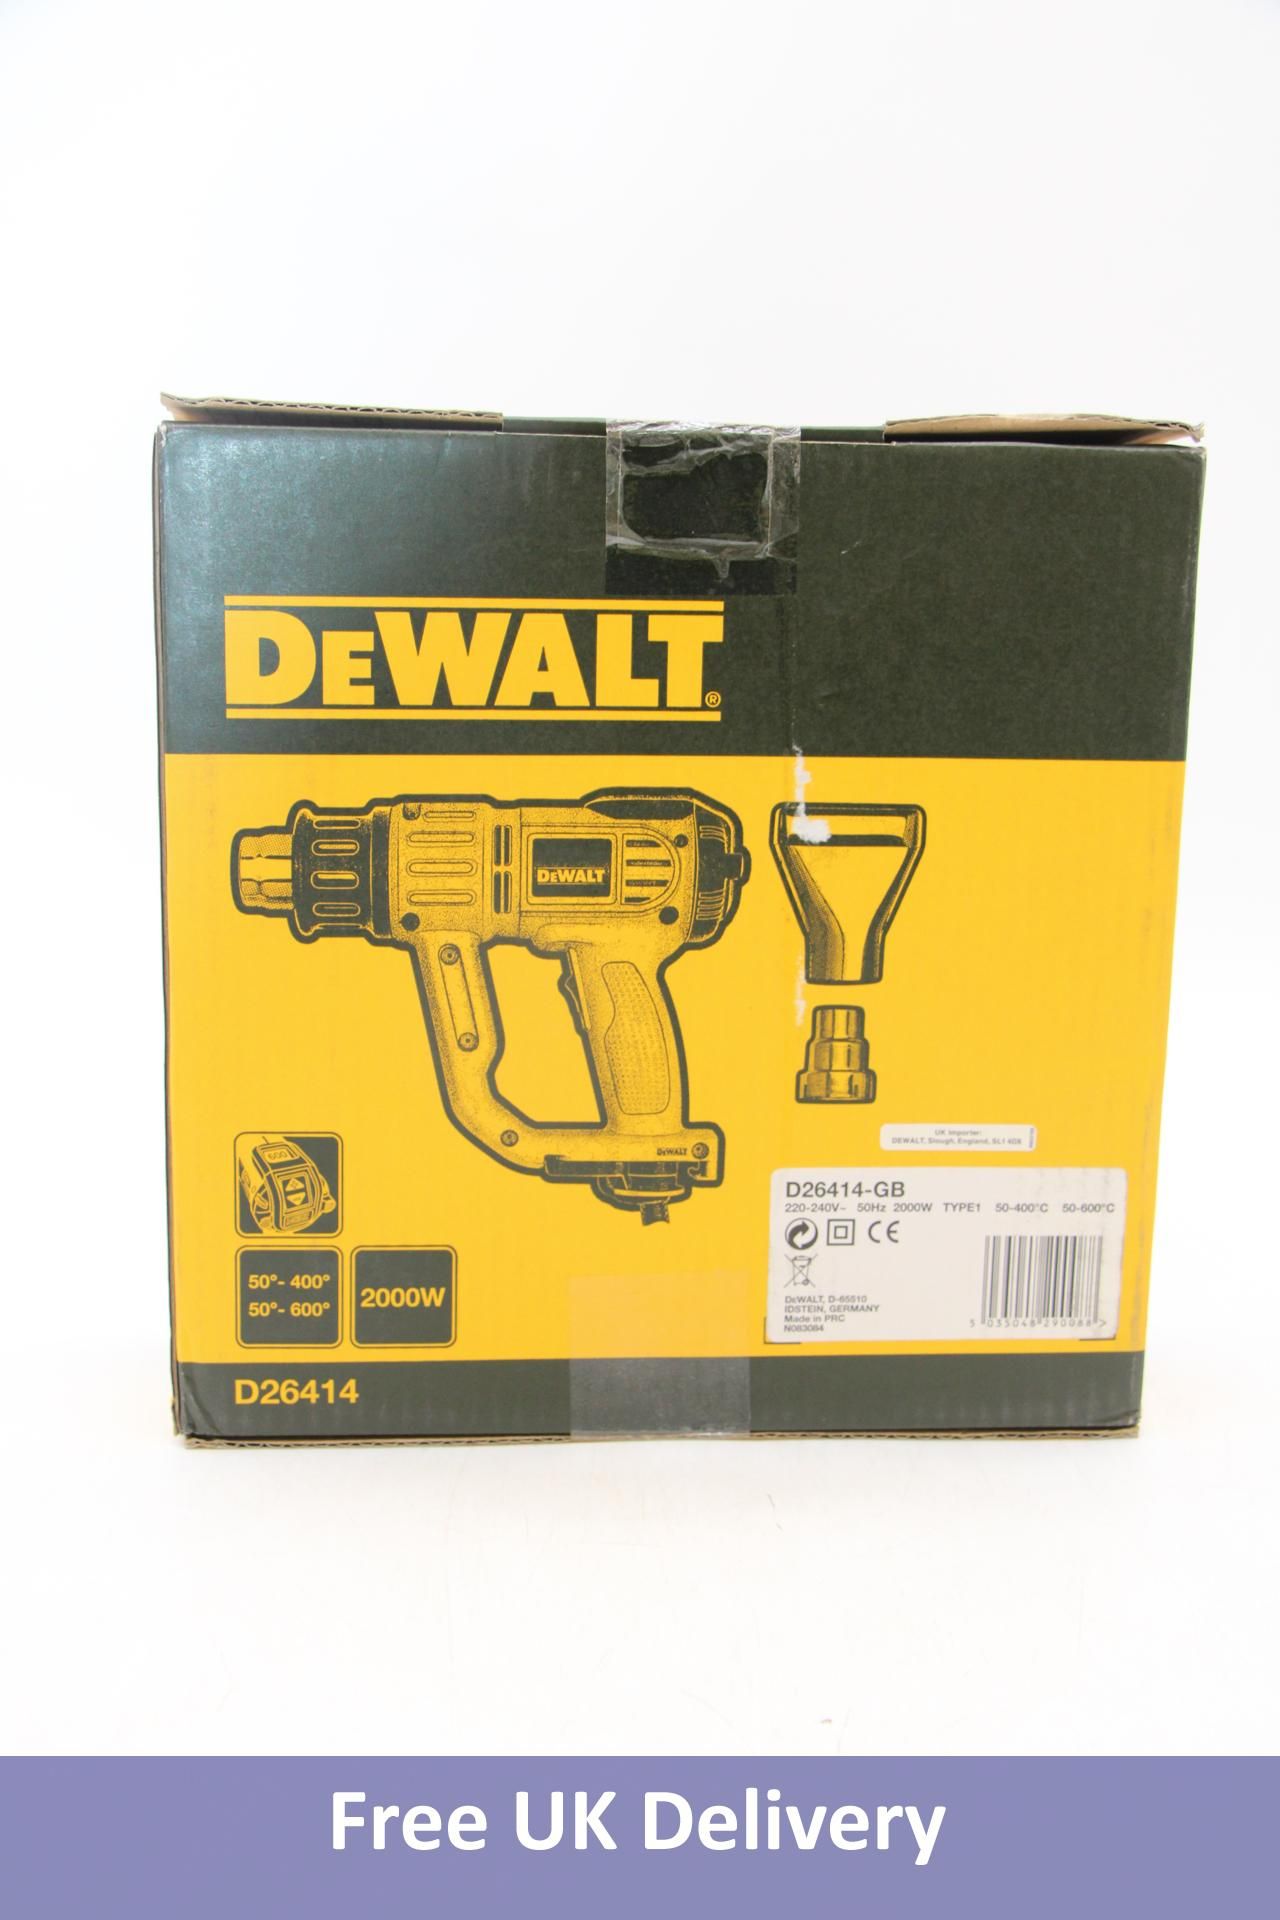 DeWalt D26414-GB 2000W 240V LCD Premium Heat Gun, Yellow/Black. Box damaged